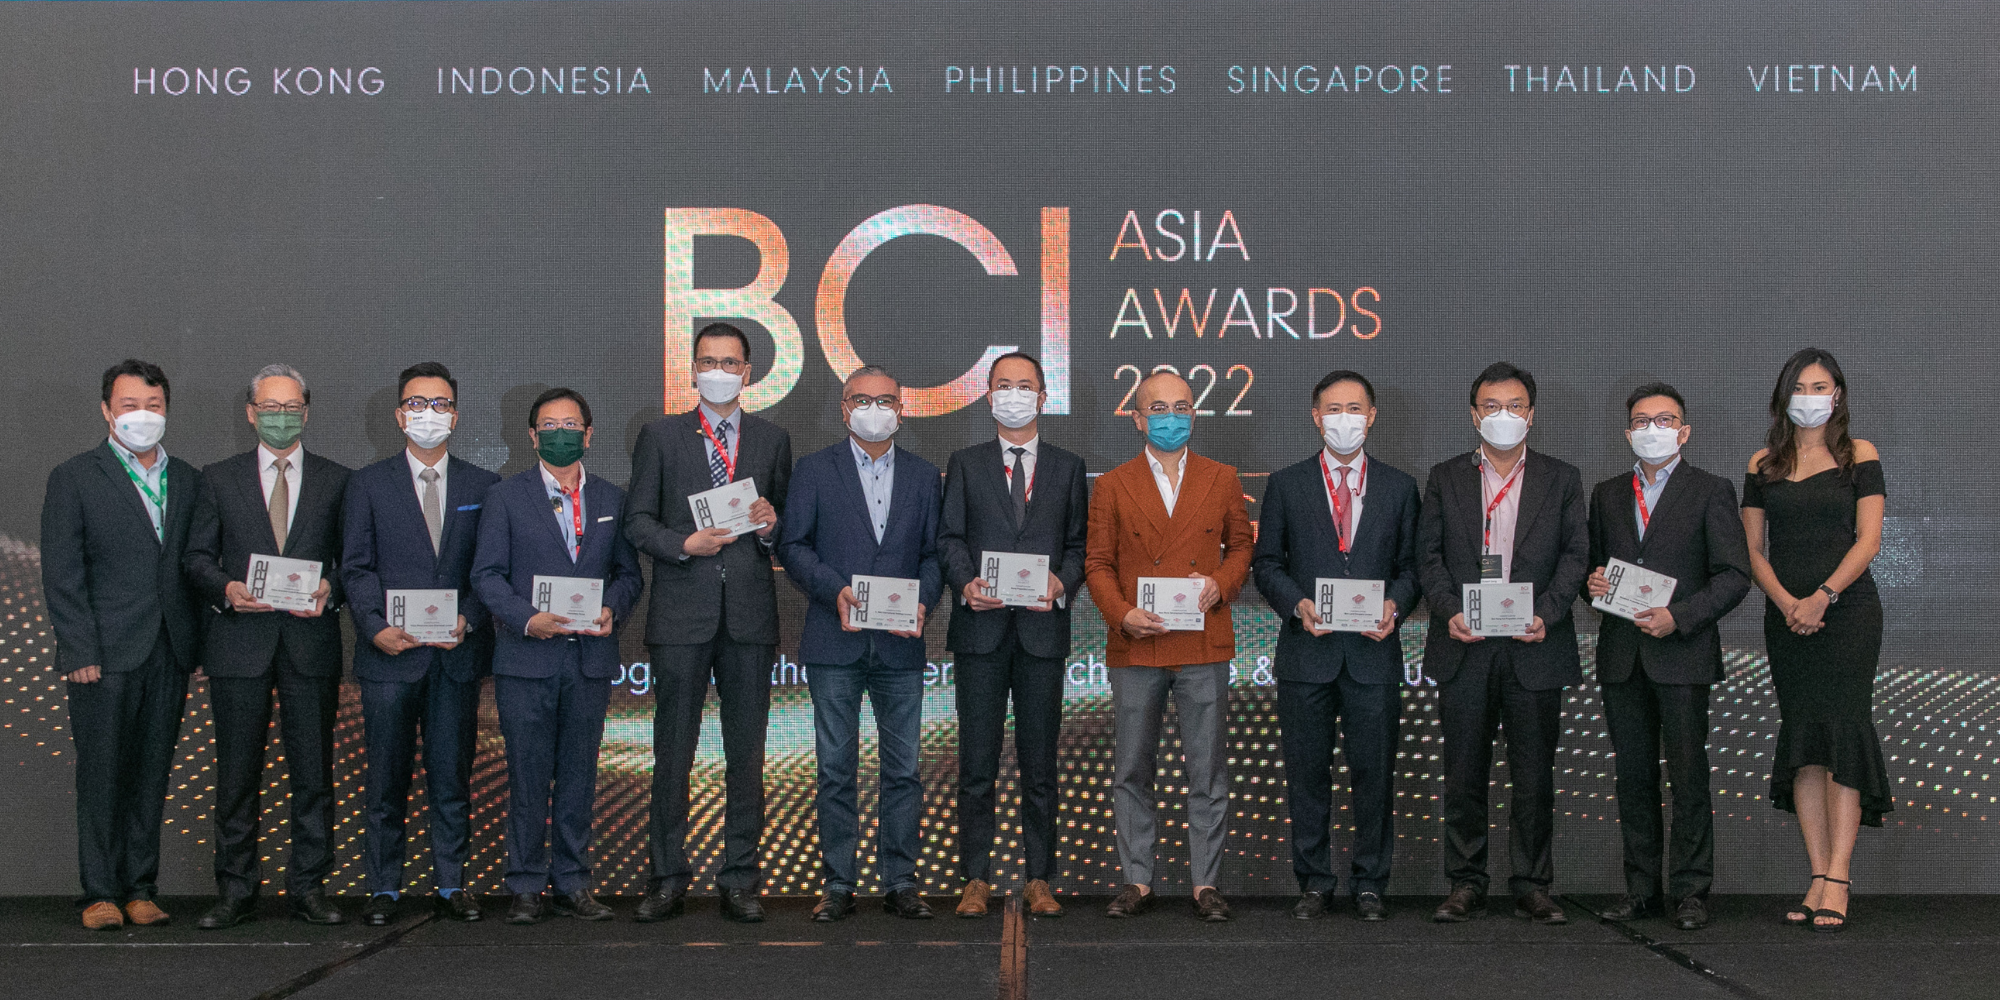 ภาพเด่นสำหรับ “ BCI Asia Awards ฮ่องกง 2022 ”